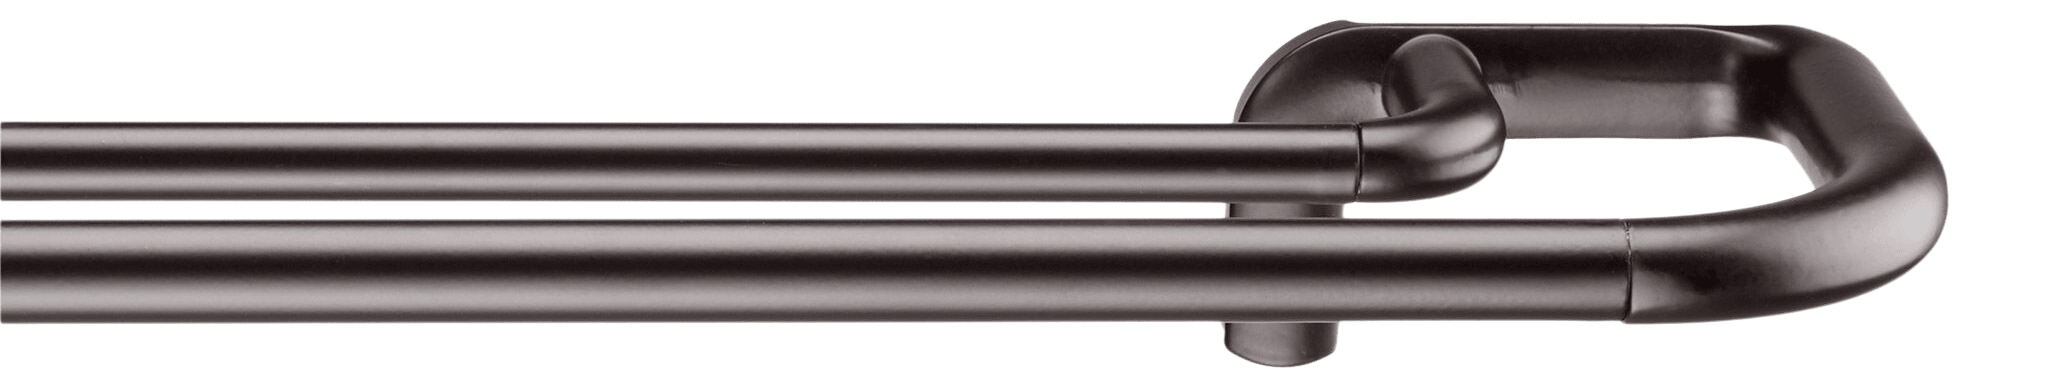 Blackout Curtains Double Rod Set - Diameter 19mm